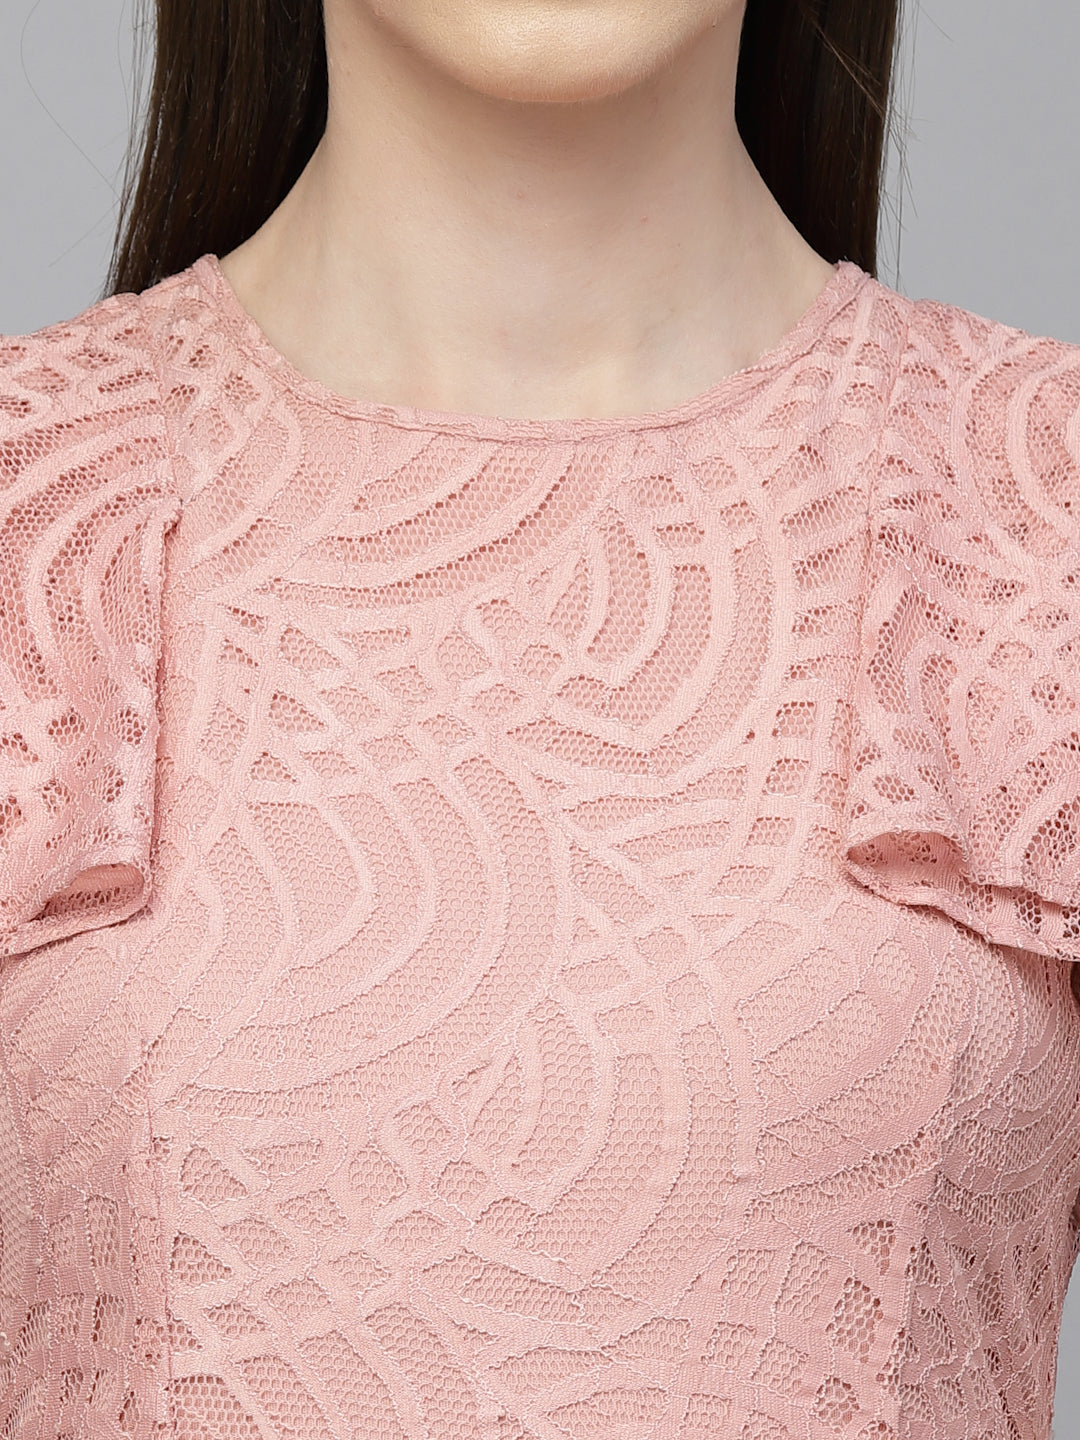 Gipsy Dusky Pink Net Fabric Dress